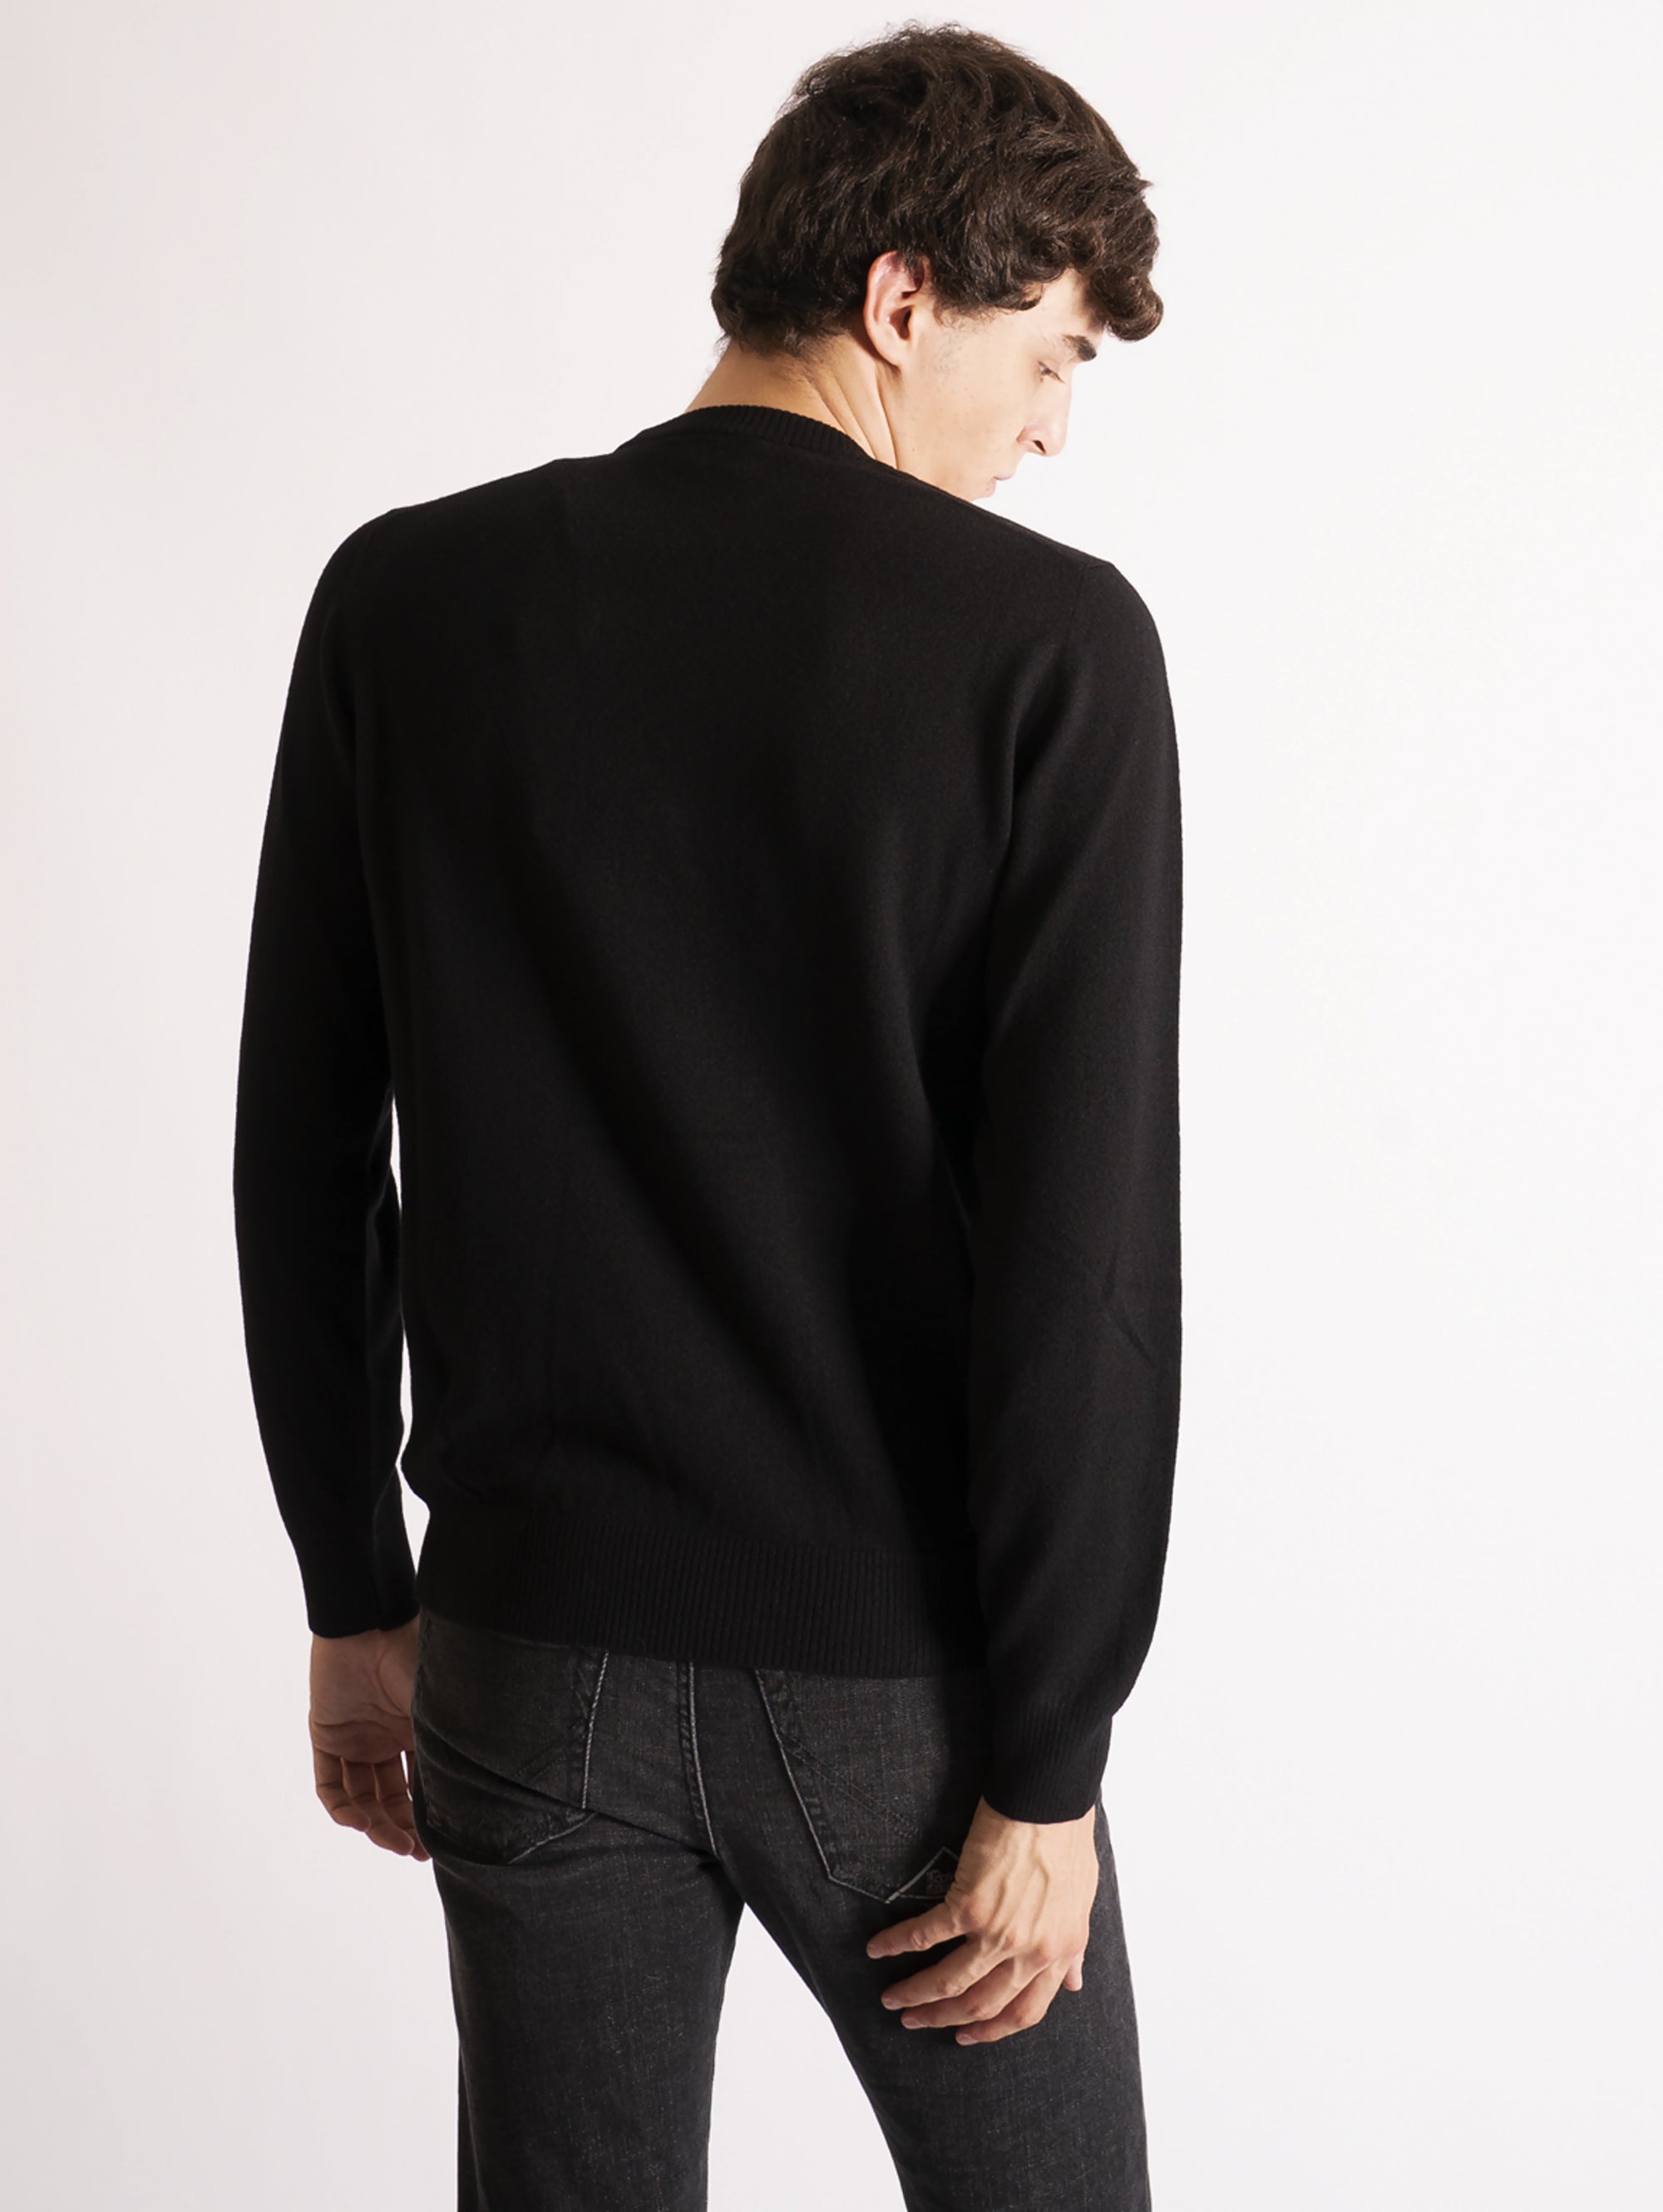 Crewneck Sweater in Black Geelong Wool